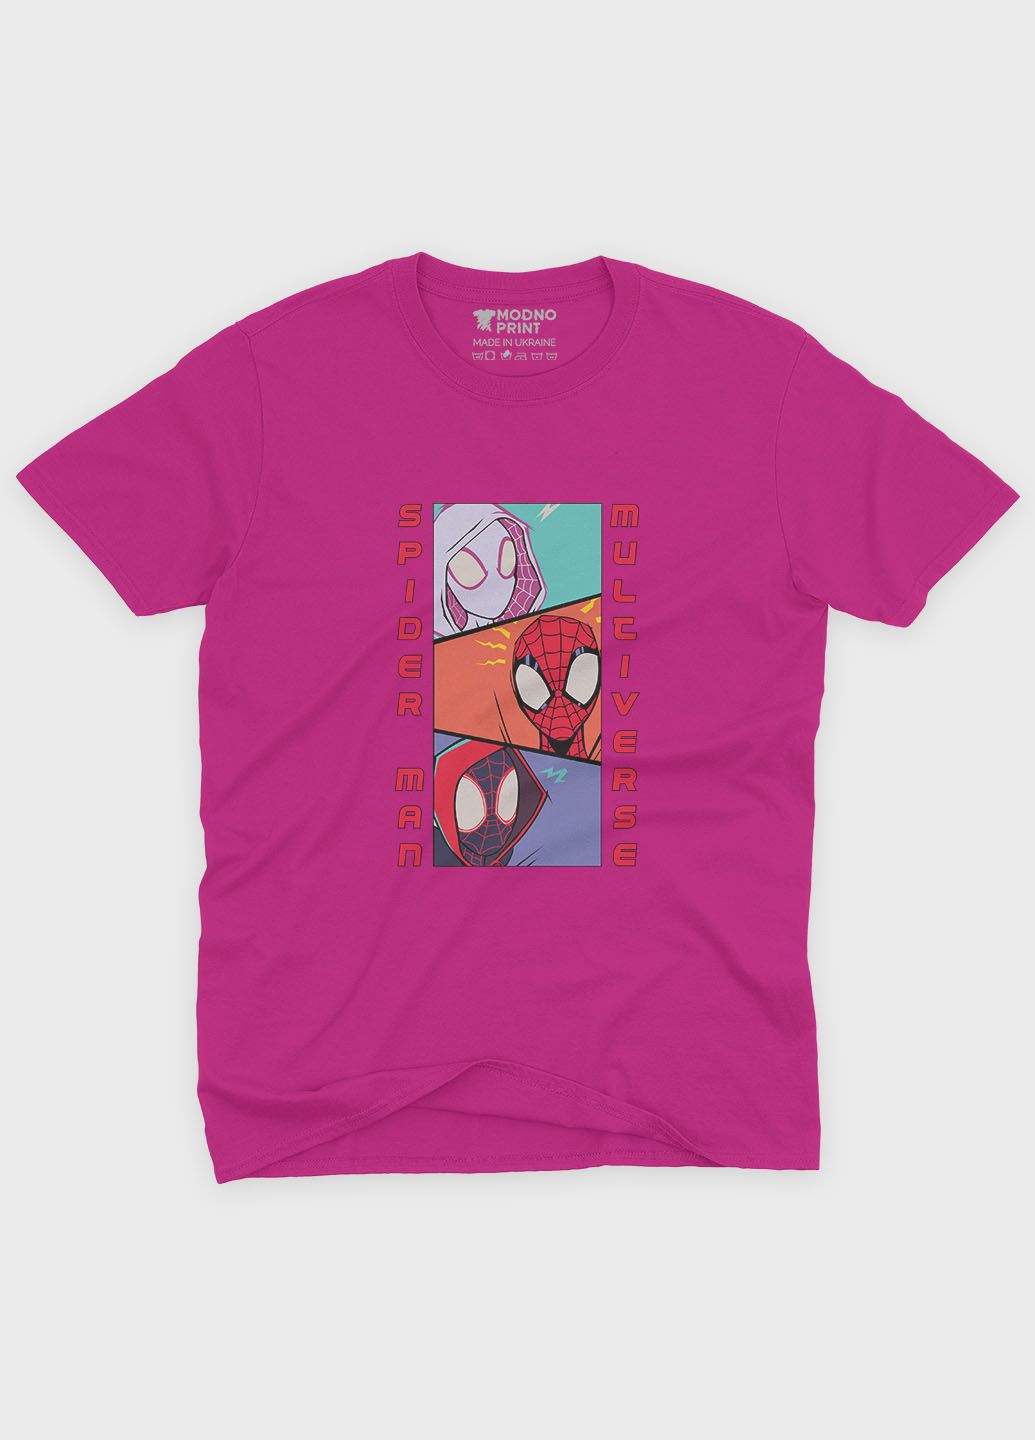 Розовая демисезонная футболка для девочки с принтом супергероя - человек-паук (ts001-1-fuxj-006-014-047-g) Modno